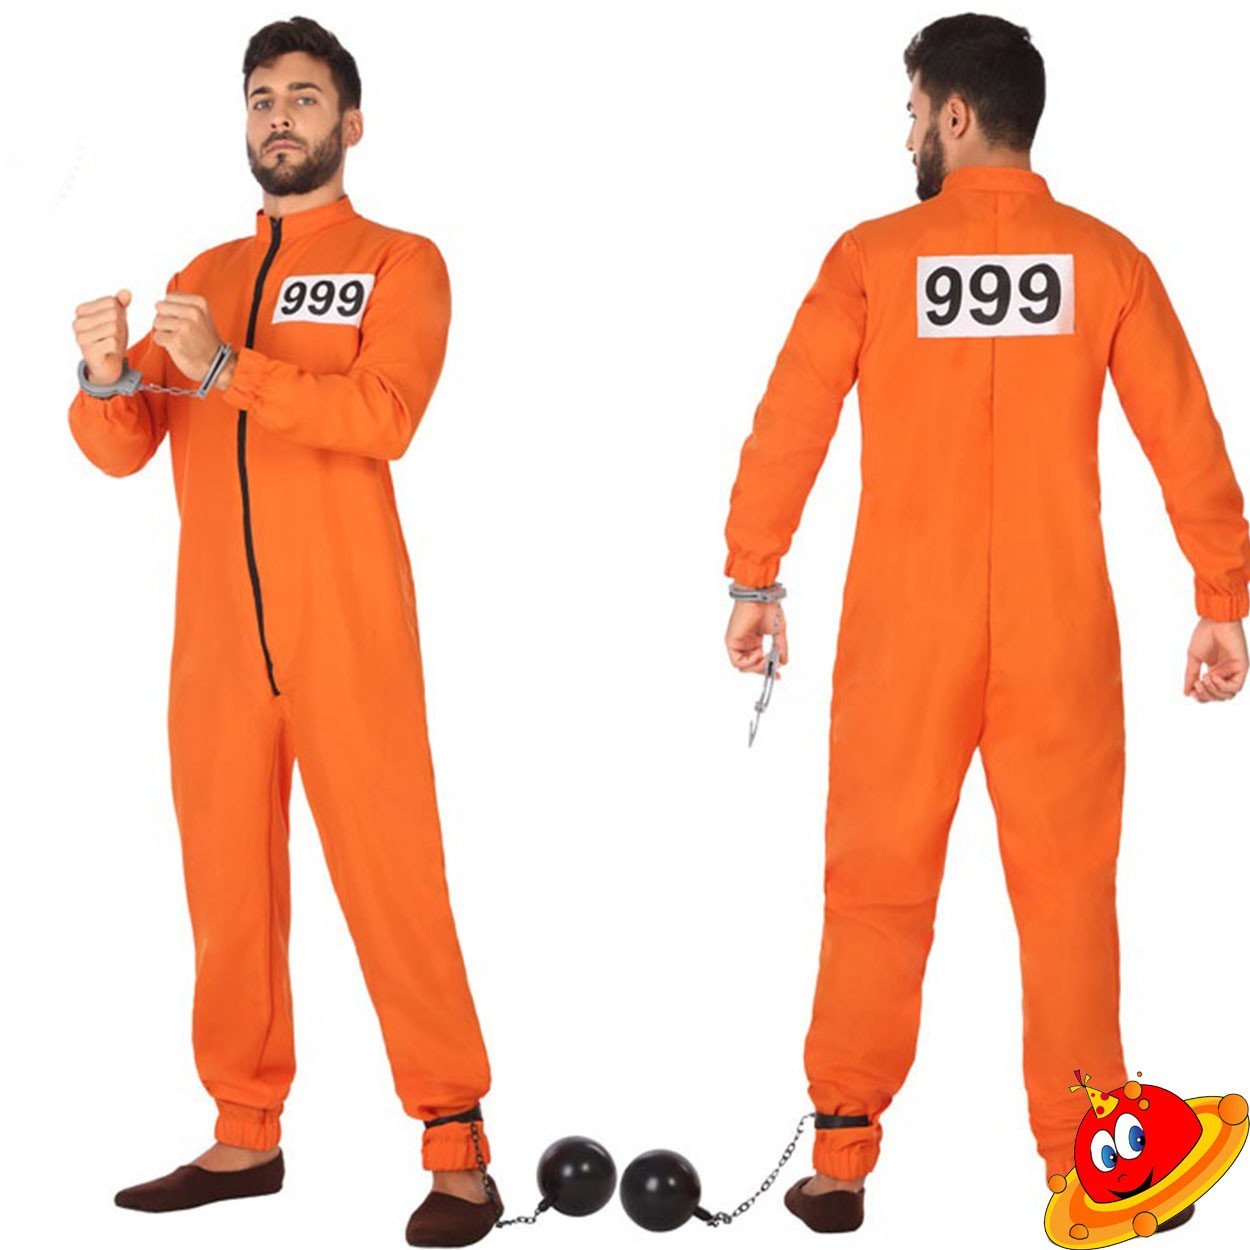 Costume Uomo Carcerato Prigioniero Tuta Arancione Tg 52/58